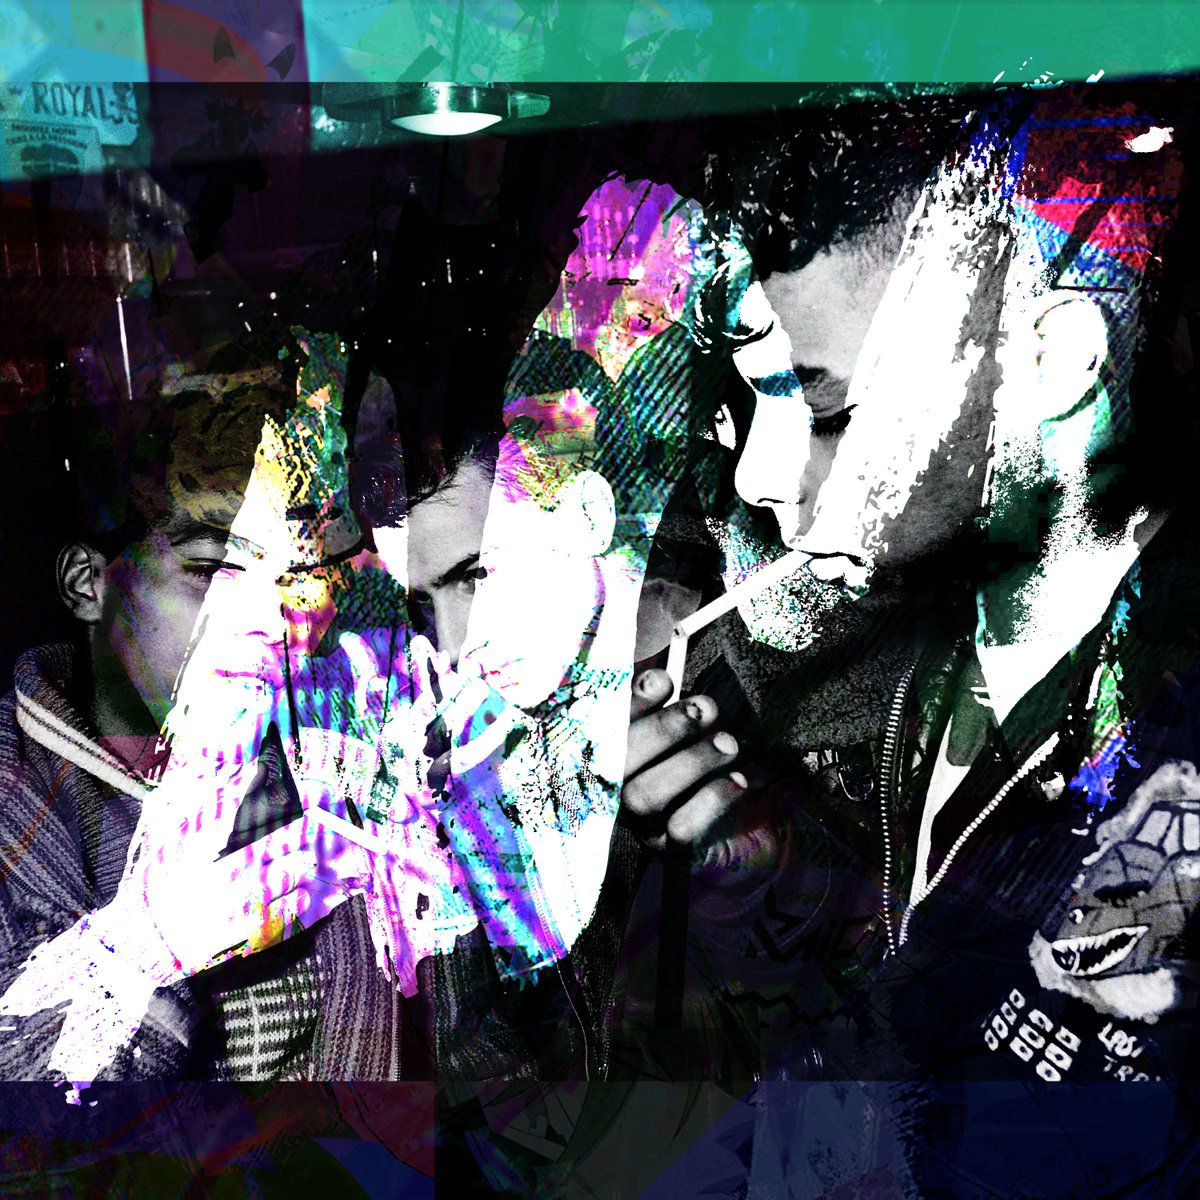 AZARYA // ROCKER EP
Hard disco release out now on RAVE RONIN AM
raveroninam.bandcamp.com/album/im-off-d…

#housemusic #funkyhouse #discohouse #jackinhouse #peakhour #filteredhouse #frenchhouse #techno #electronicmusic #chicagohousemusic #rave #club